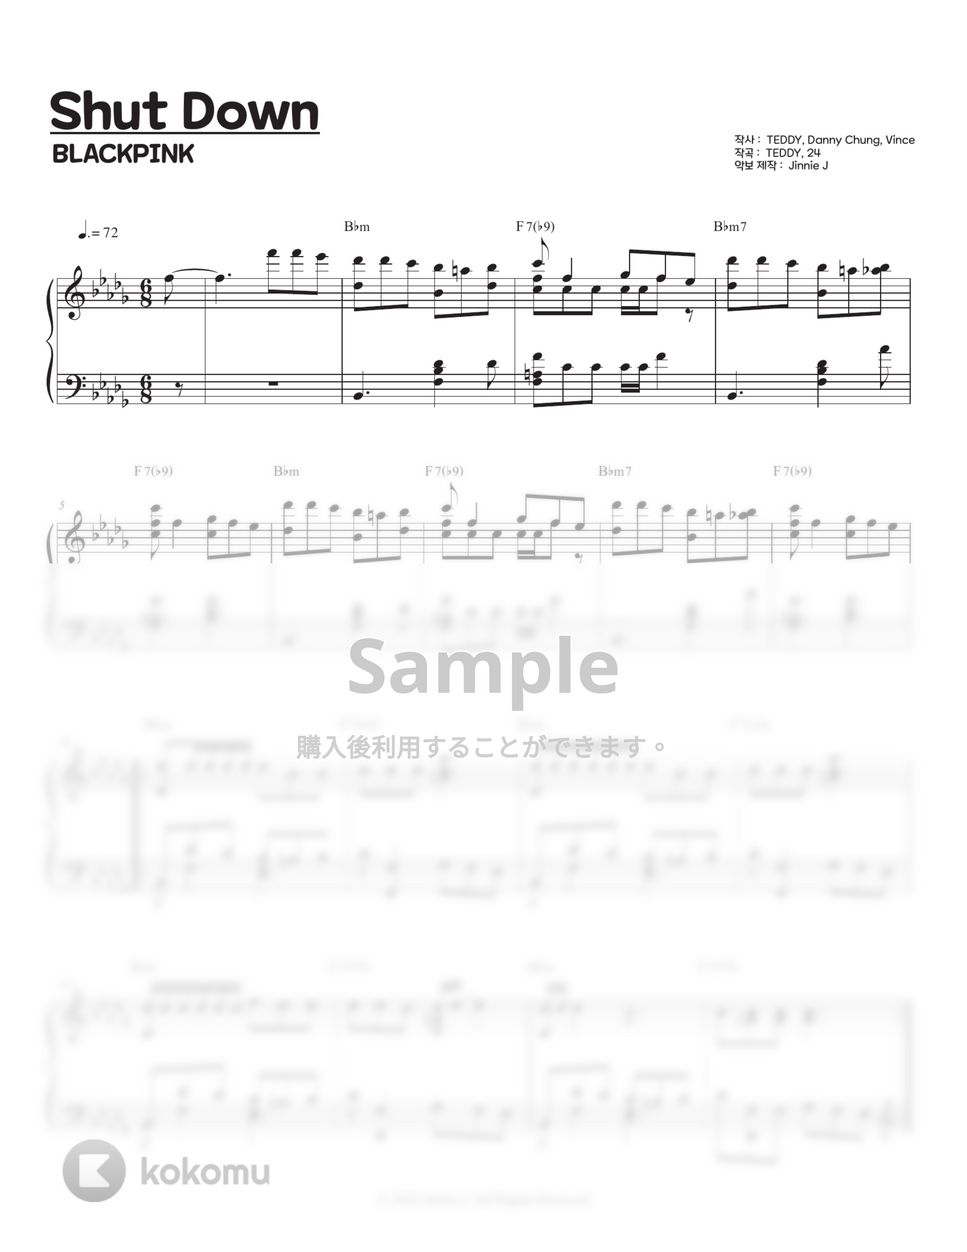 Blackpink - Shut Down (Bb minor, A minor key) by Jinnie J